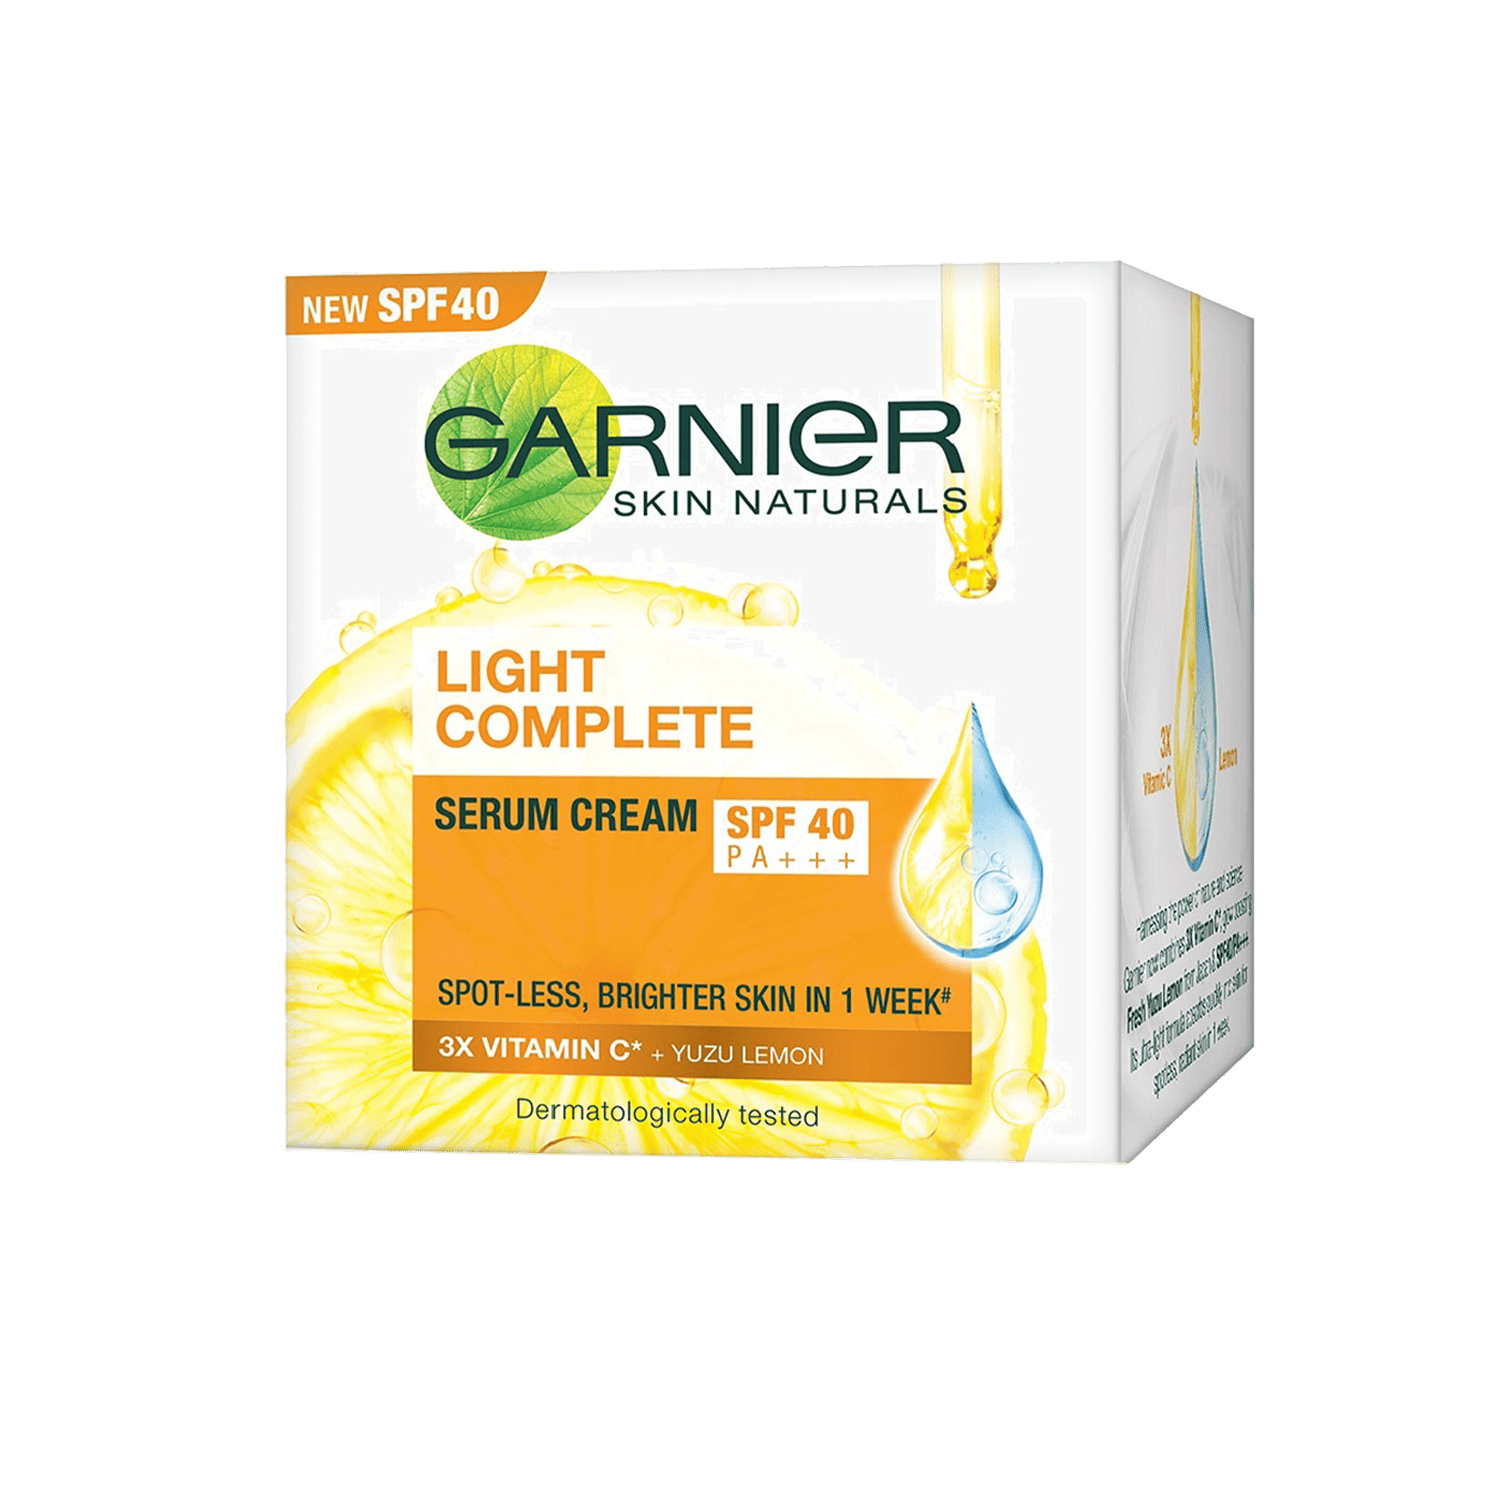 Garnier | Garnier Bright Complete Serum Cream with Light Complete Body Lotion (45g)